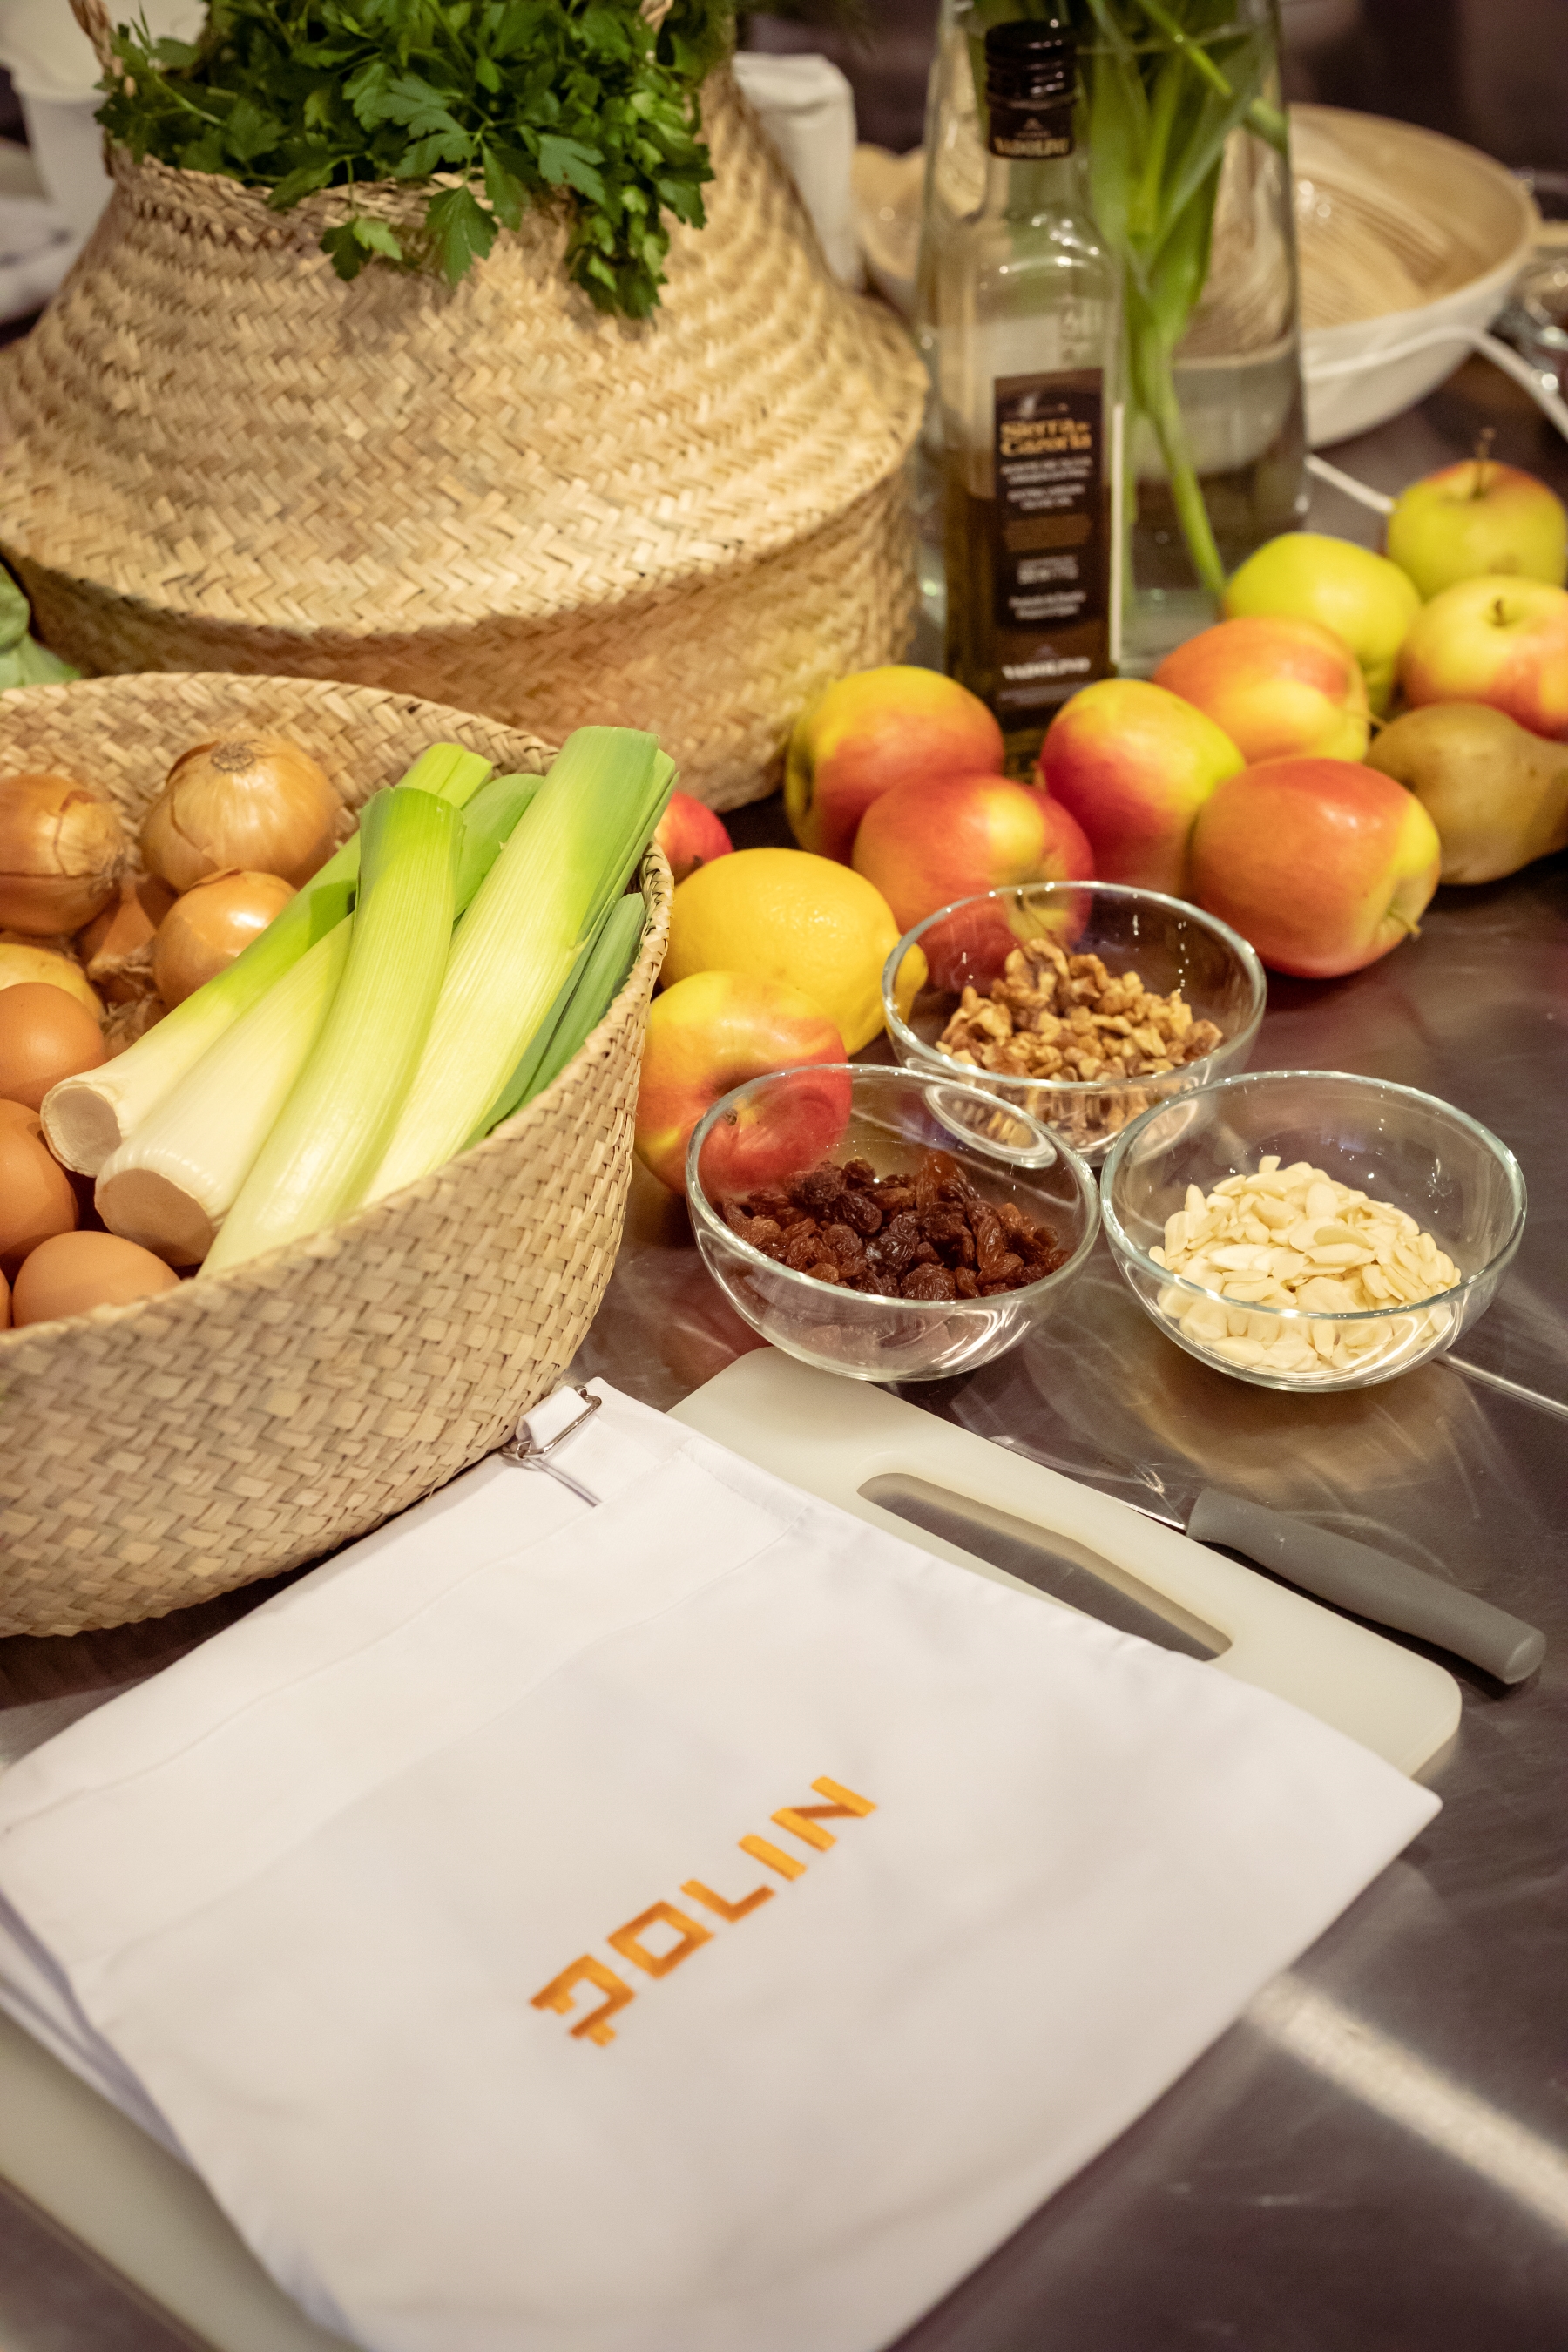 Na stole w Pracowni kulinarnej "U Fani" leżą jabłka i stoją miseczki z orzechami i bakaliami, miska z cebulą i porem, butelka z oliwą, koszyk z natką pietruszki.